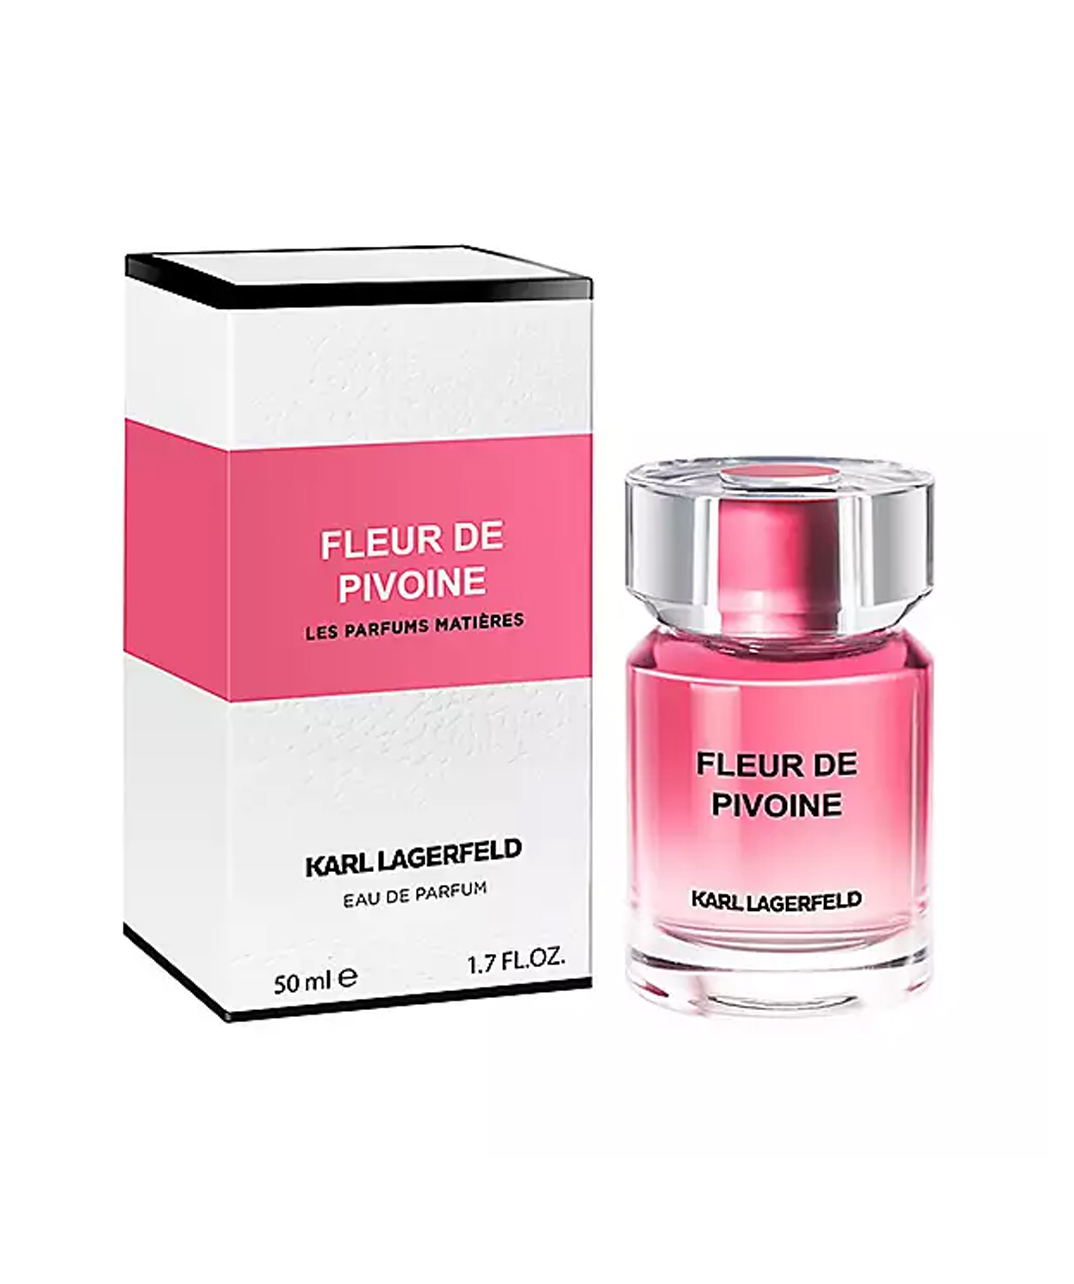 Perfume «Karl Lagerfeld» Fleur De Pivoine, for women, 50 ml